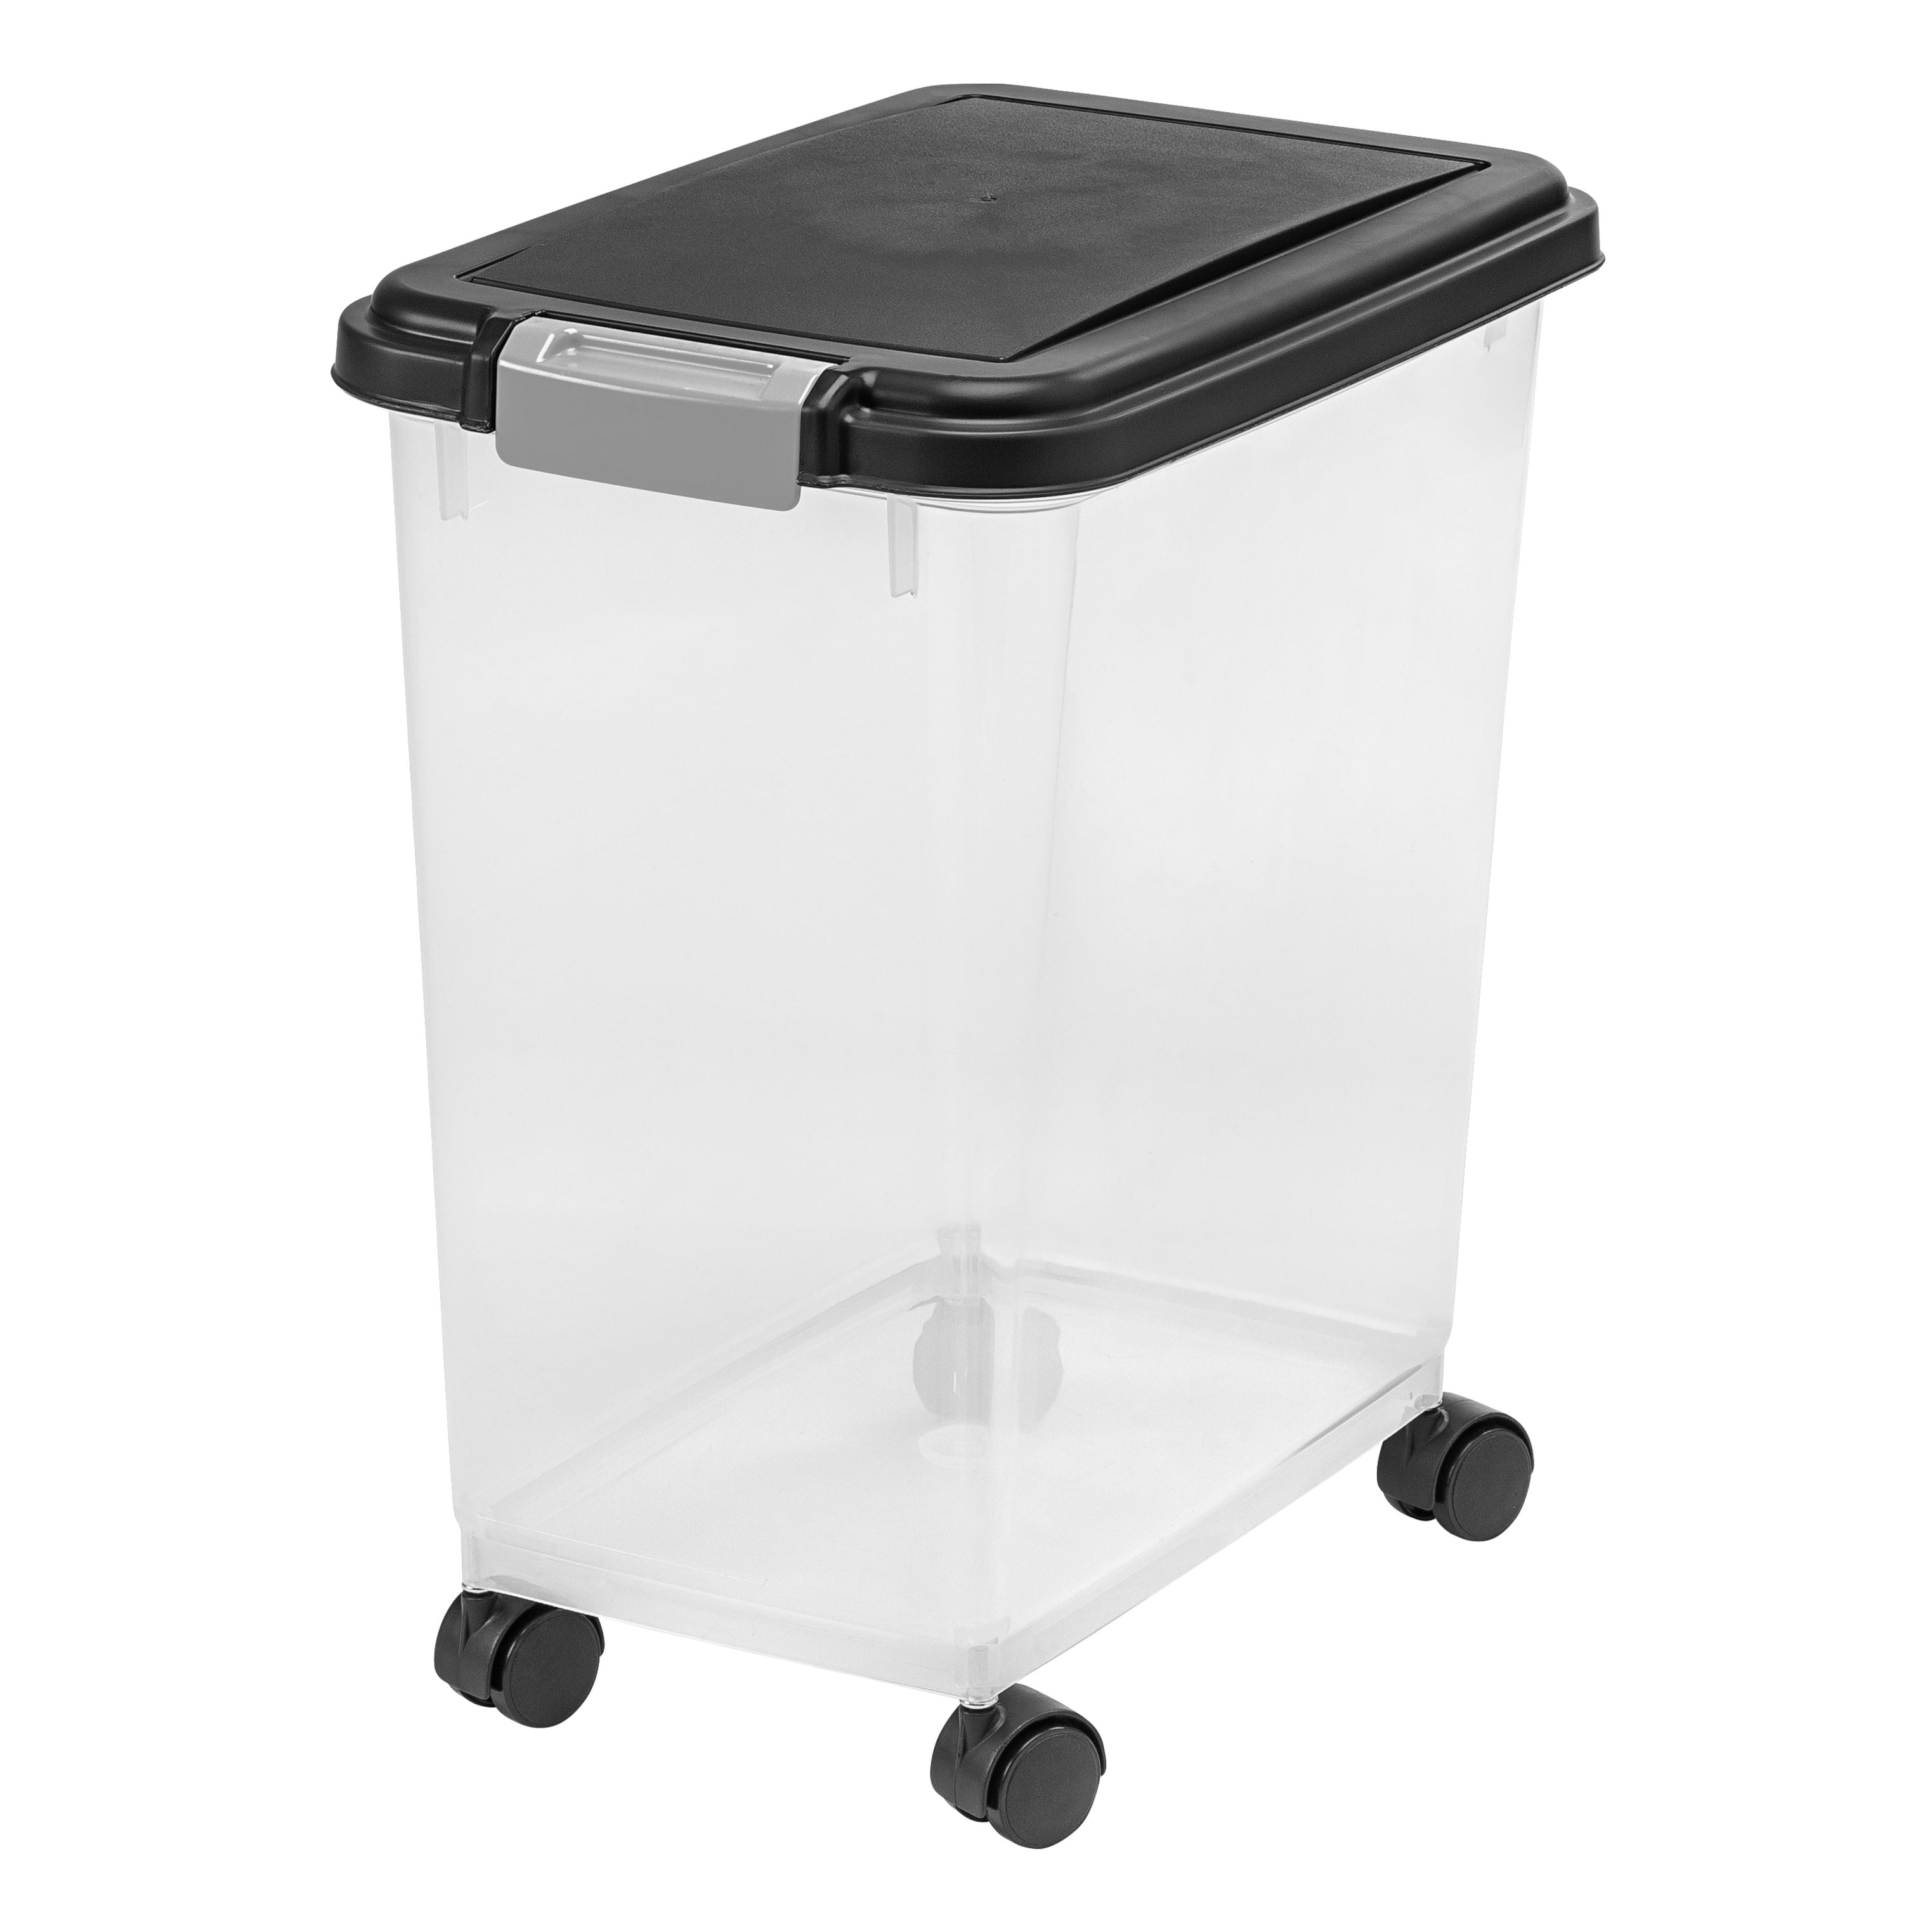 Premius Air-Tight Plastic Food Storage Container, Black-Clear, 3.1 Quart,  8x8x6 Inches 